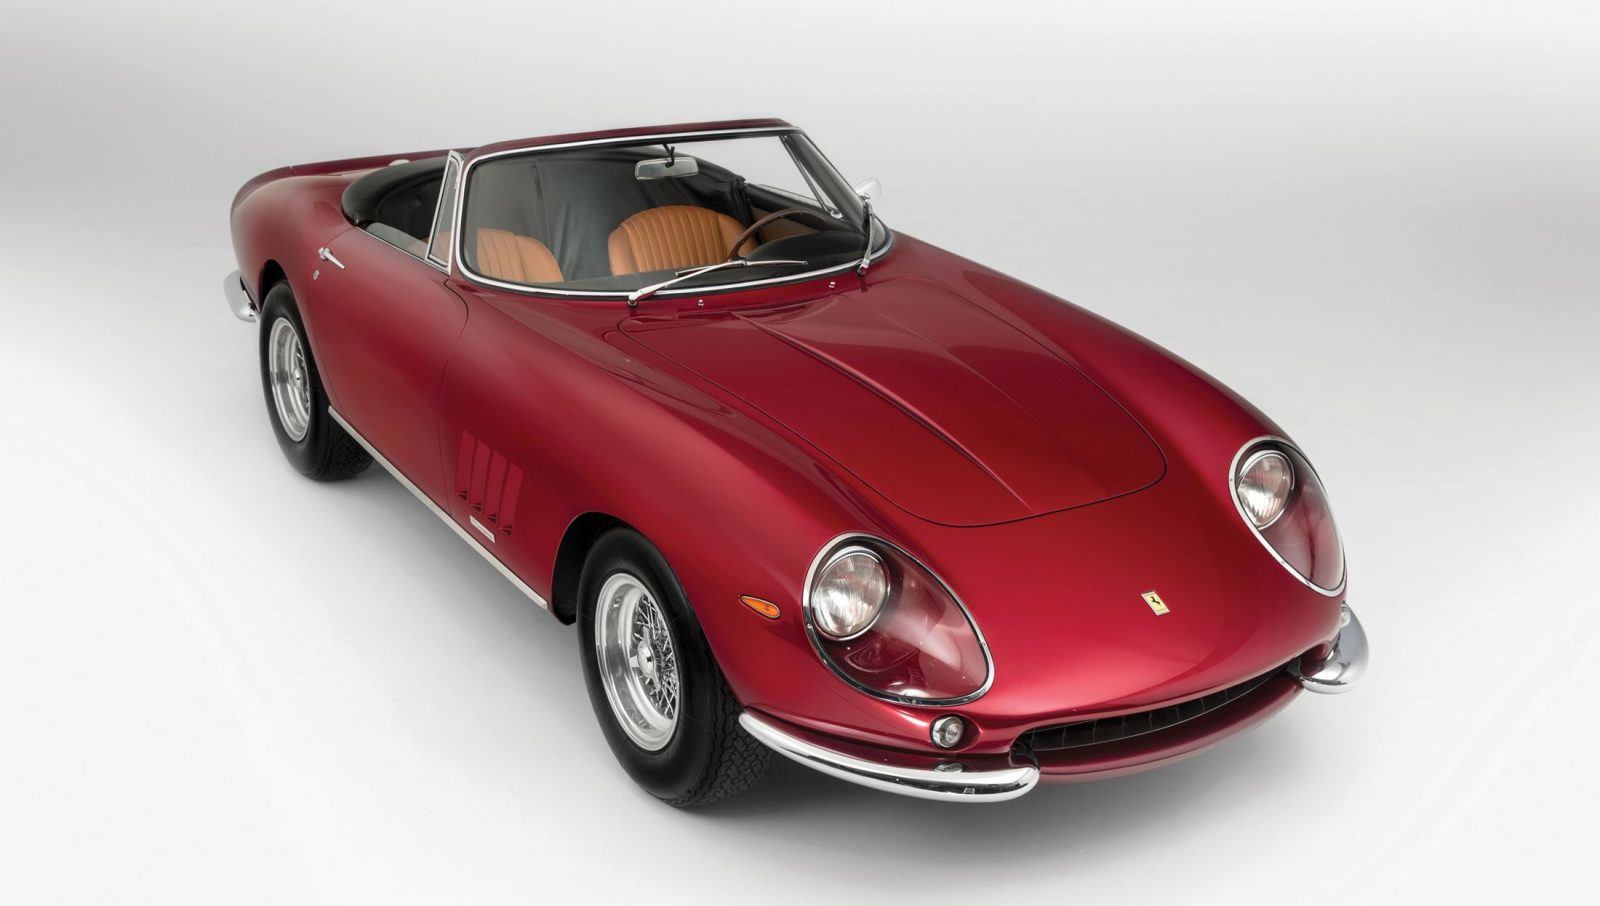 10 Grand Per Pound! 1968 Ferrari 275 GTS/4 NART Spider = 821 New 